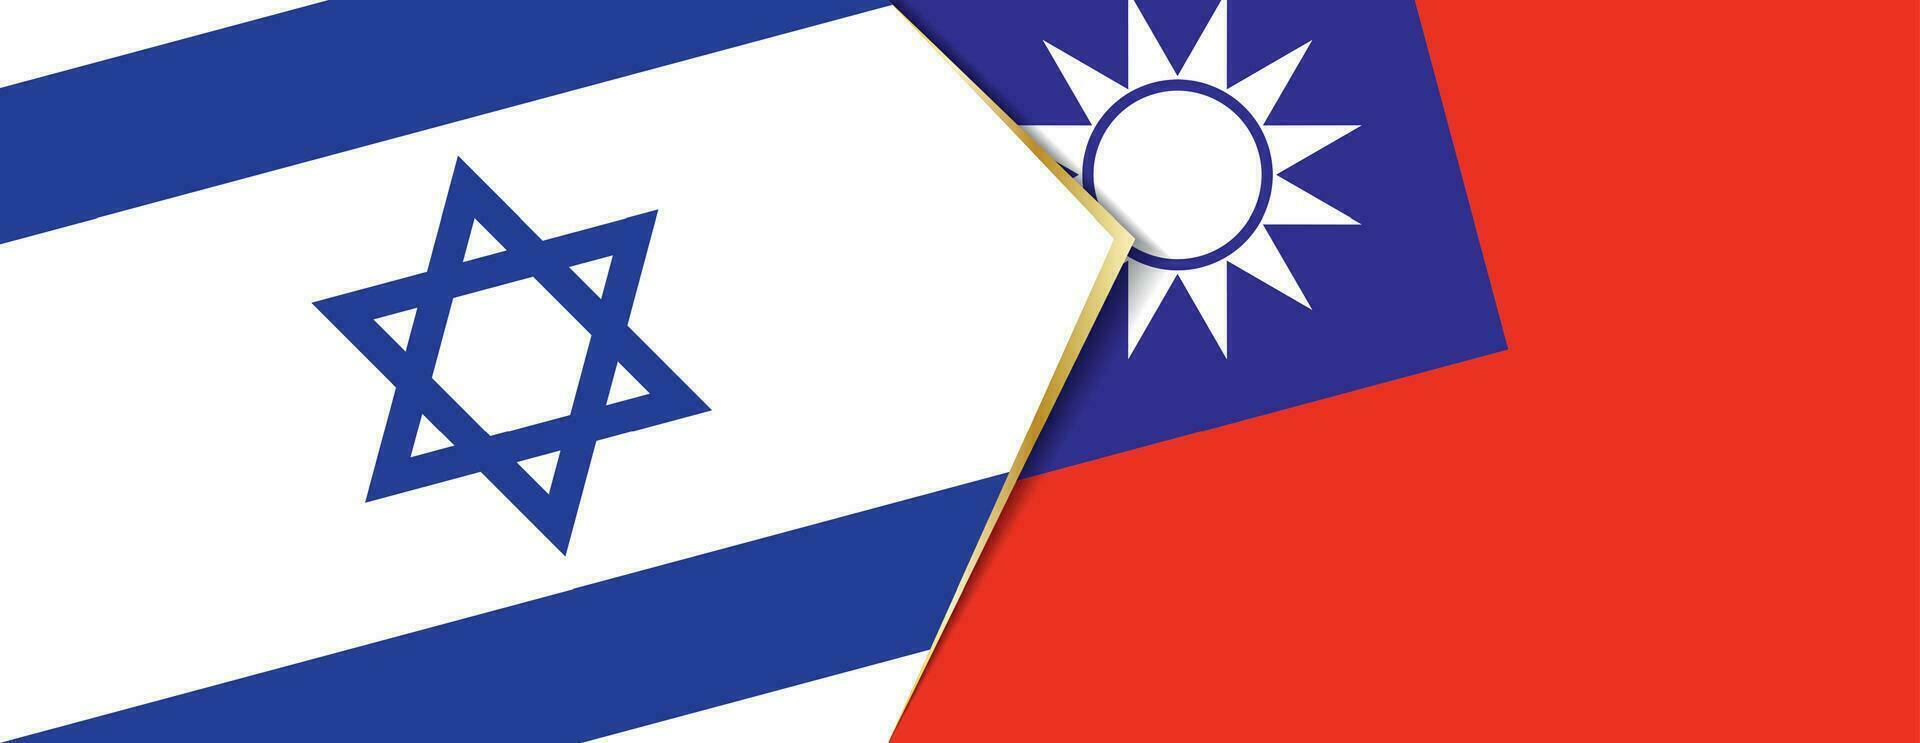 Israel e Taiwan bandeiras, dois vetor bandeiras.